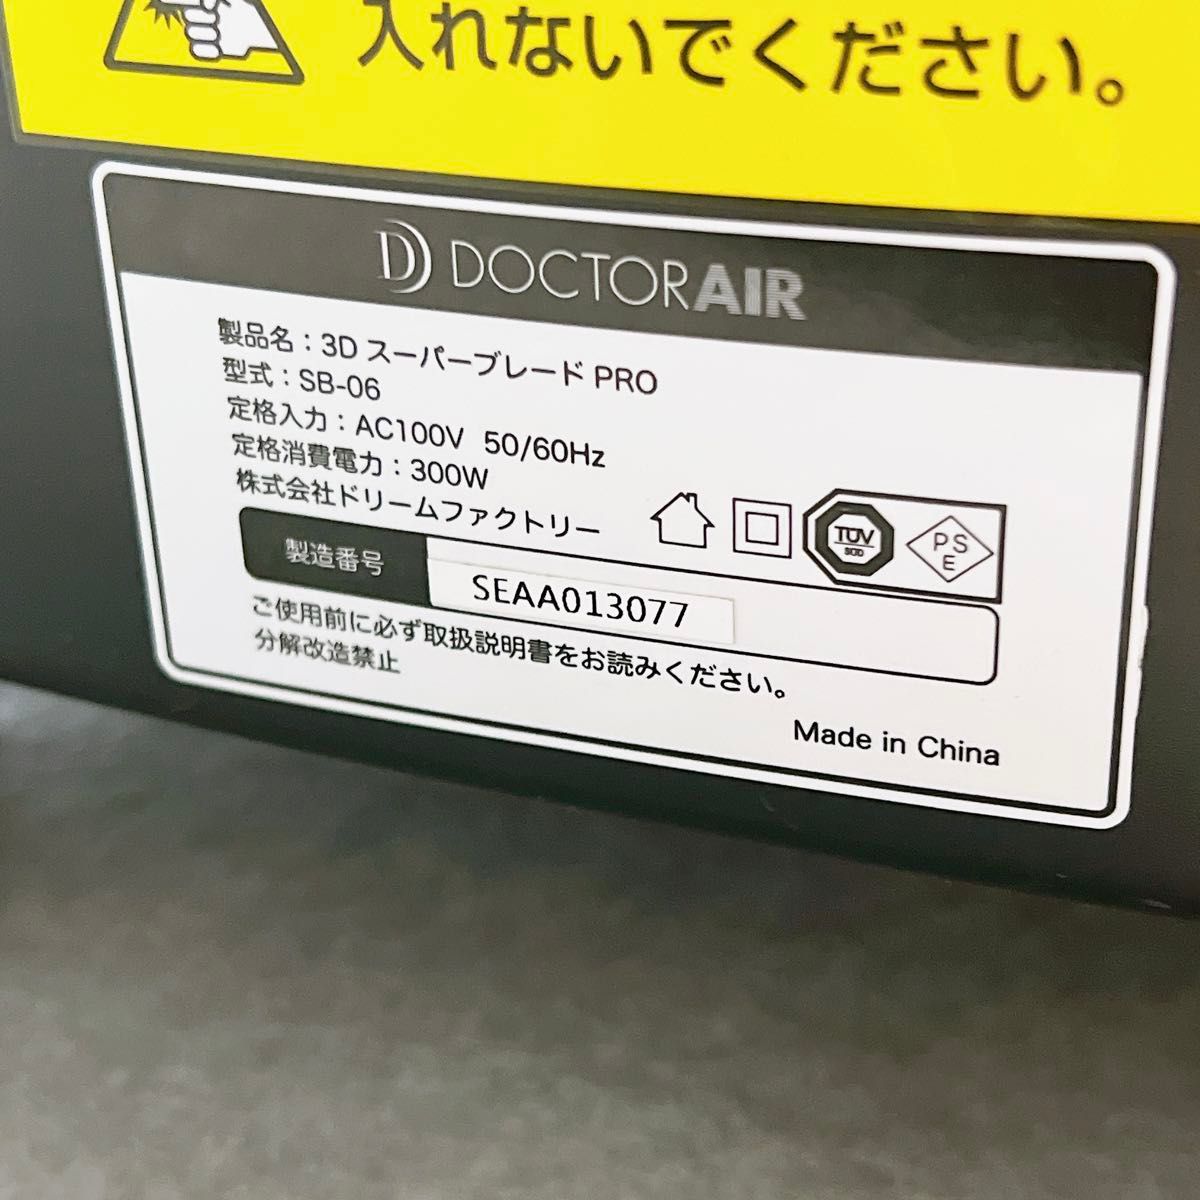 ドクターエアー 3D スーパーブレード PRO SB-06 BK DOCTOR AIR ブラック